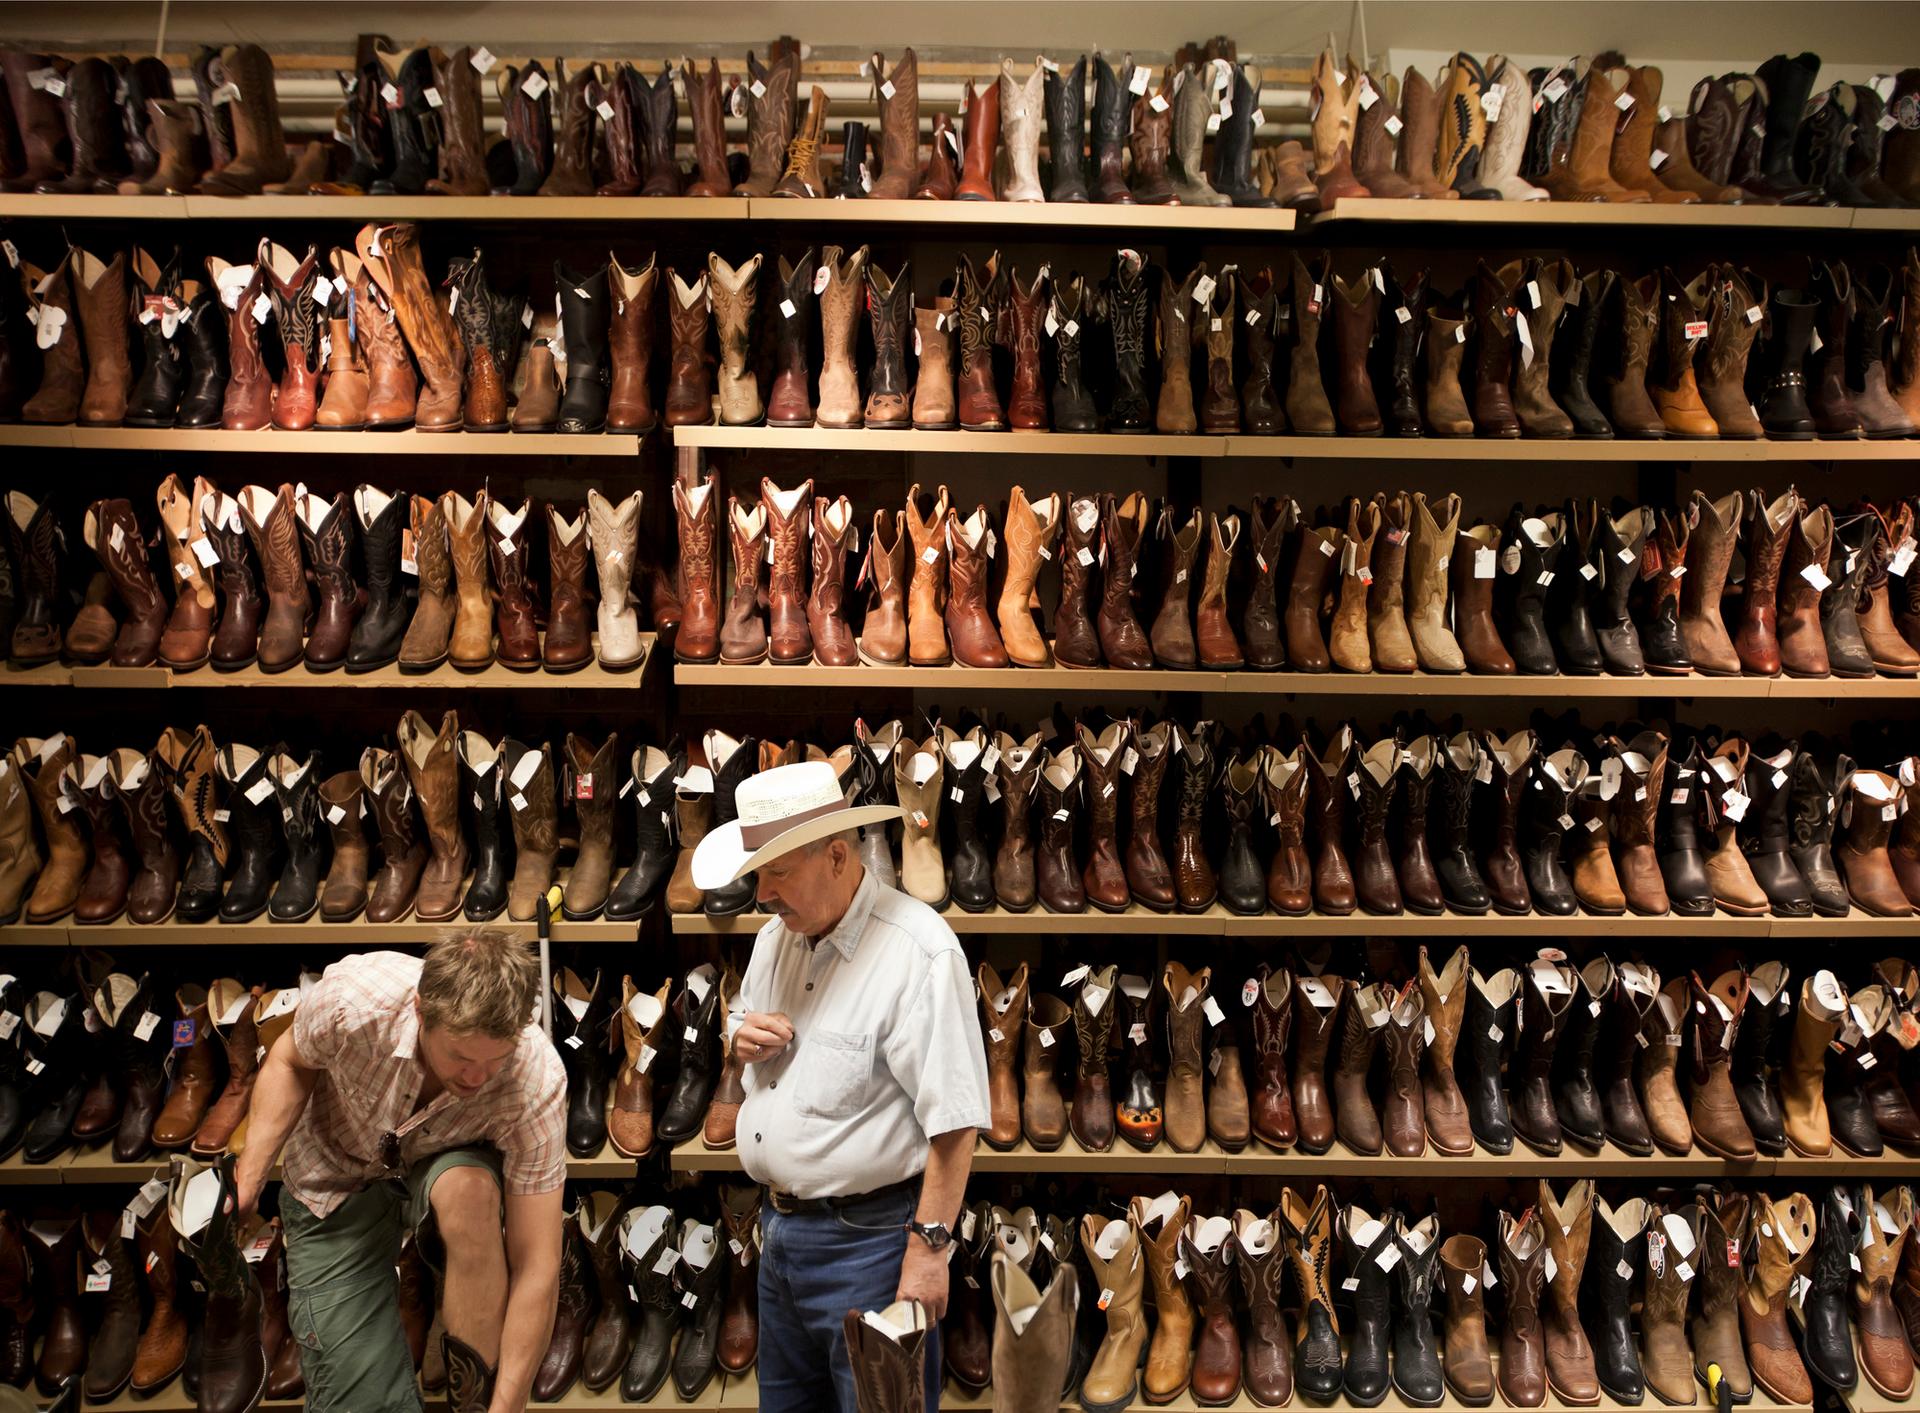 Cowboy boot shopping in Calgary